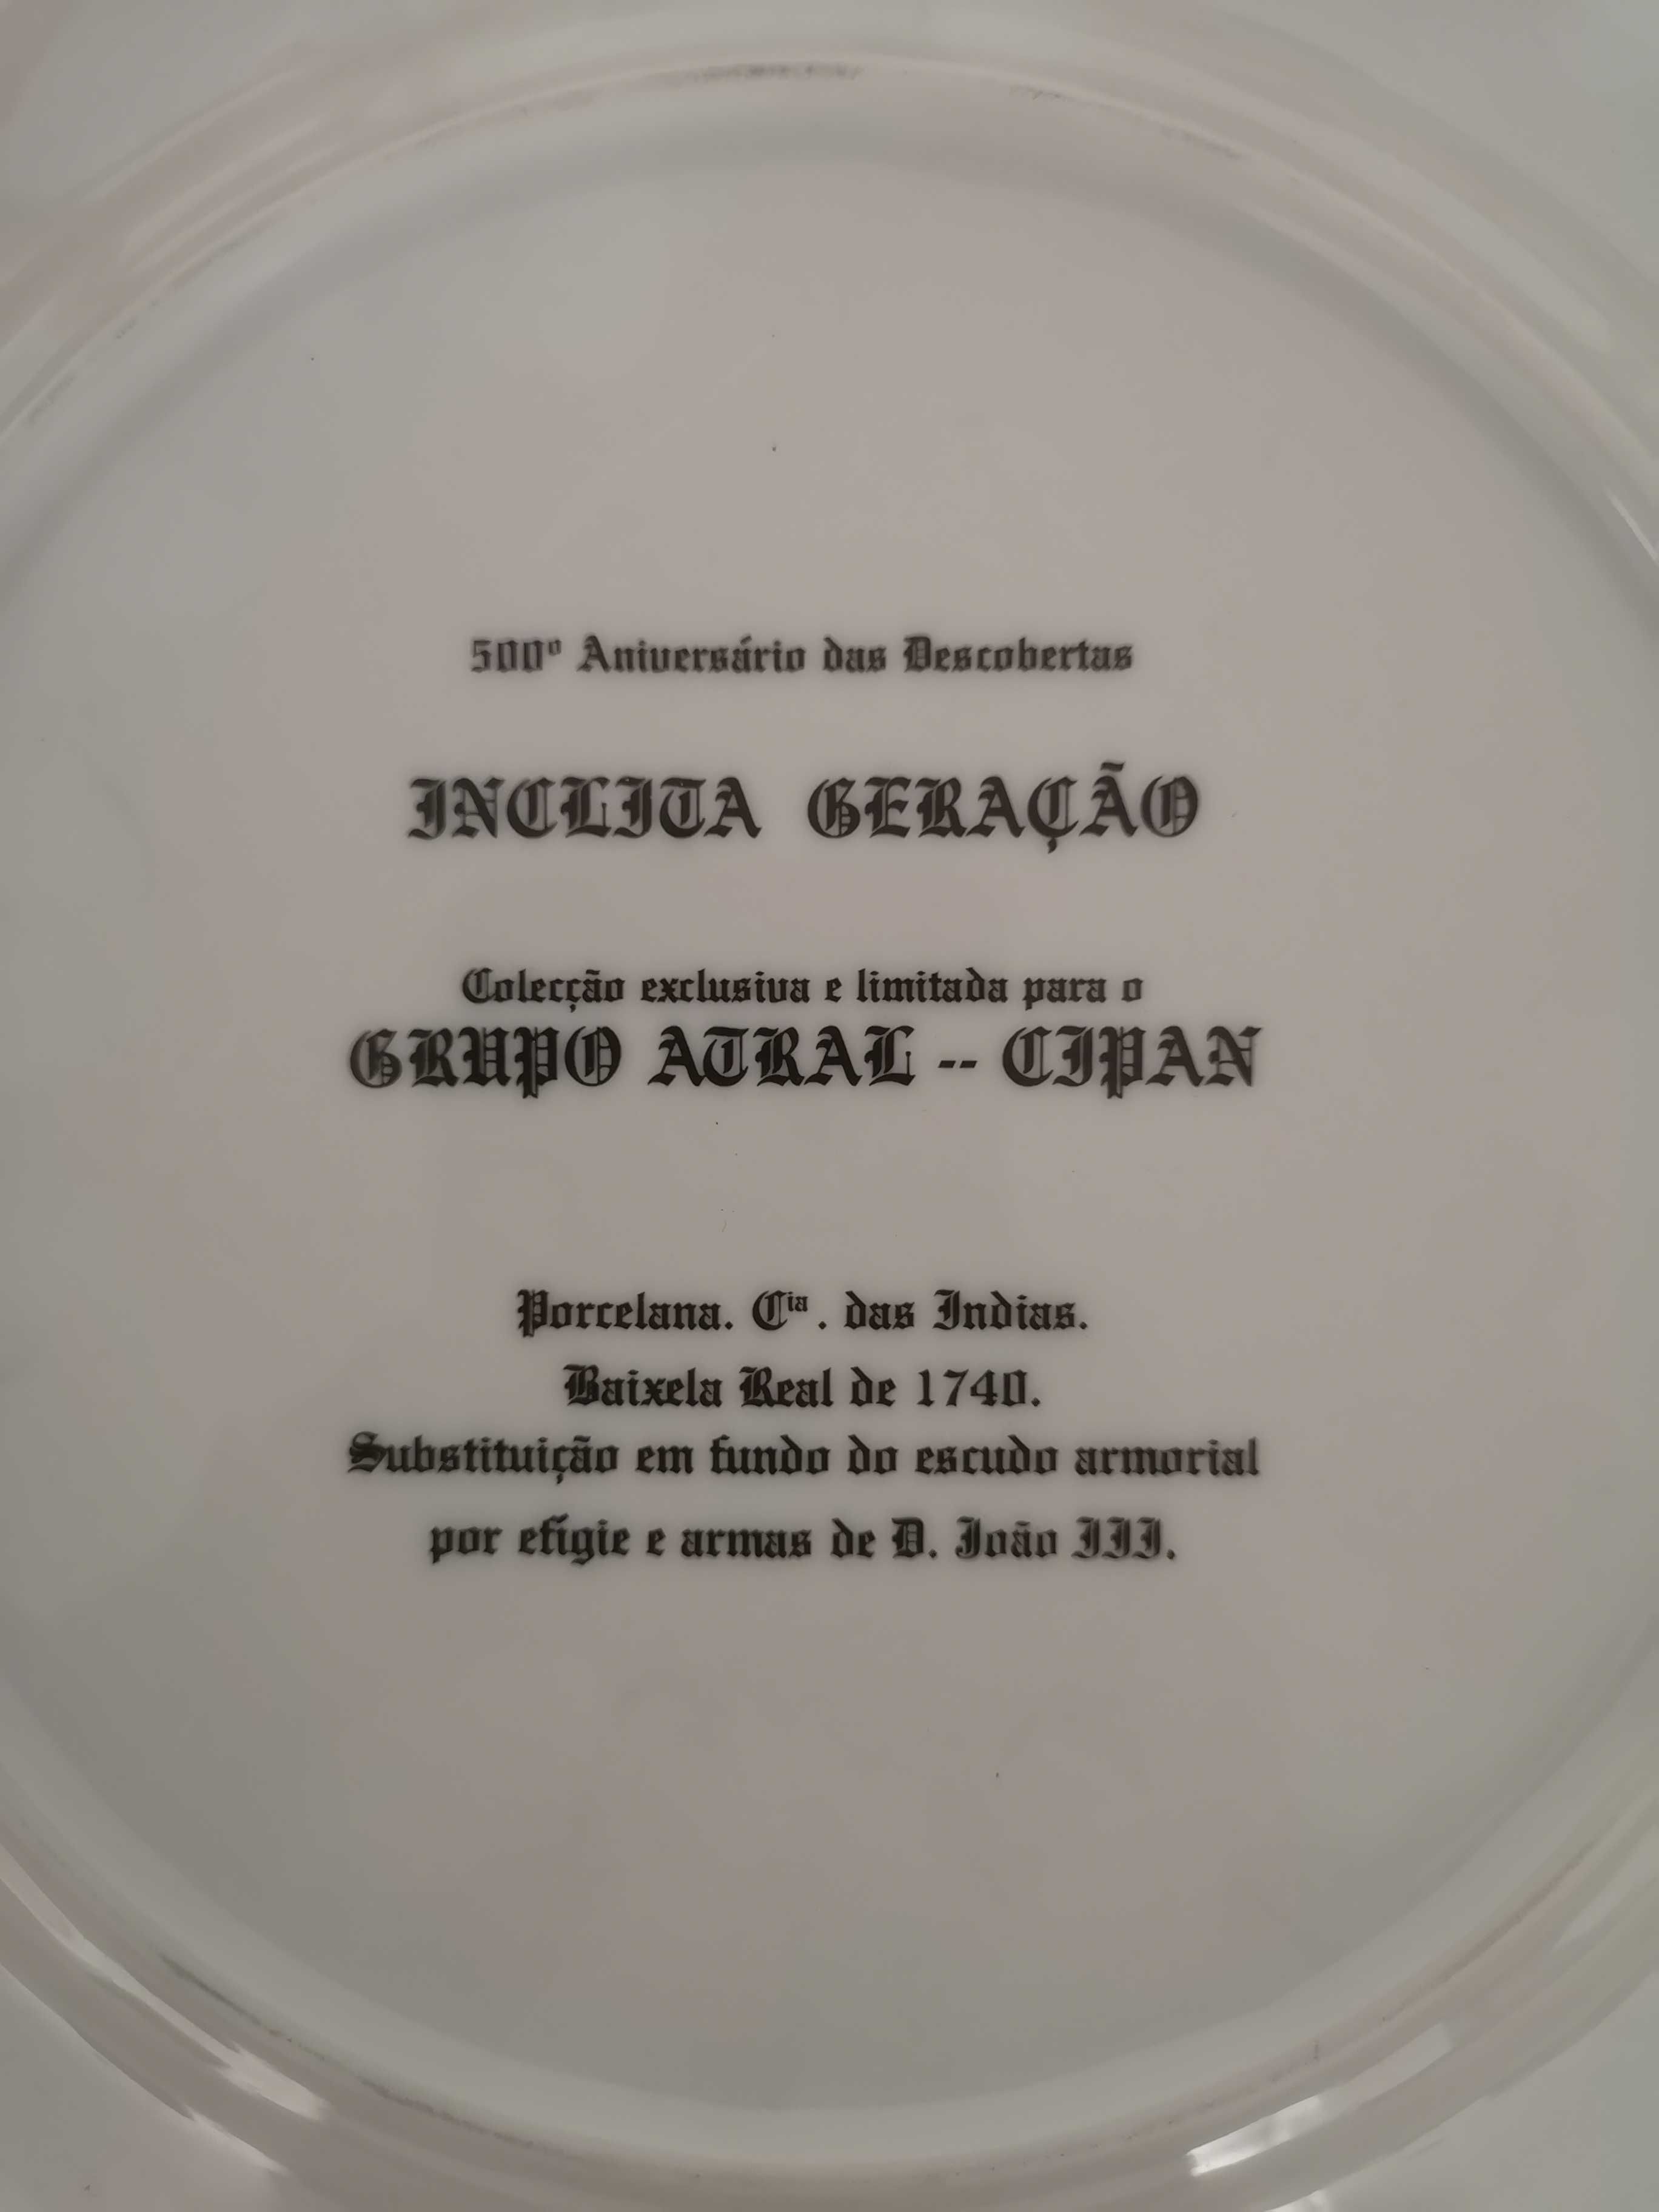 Prato de porcelana comemorativo do 500º Aniversário das Descobertas